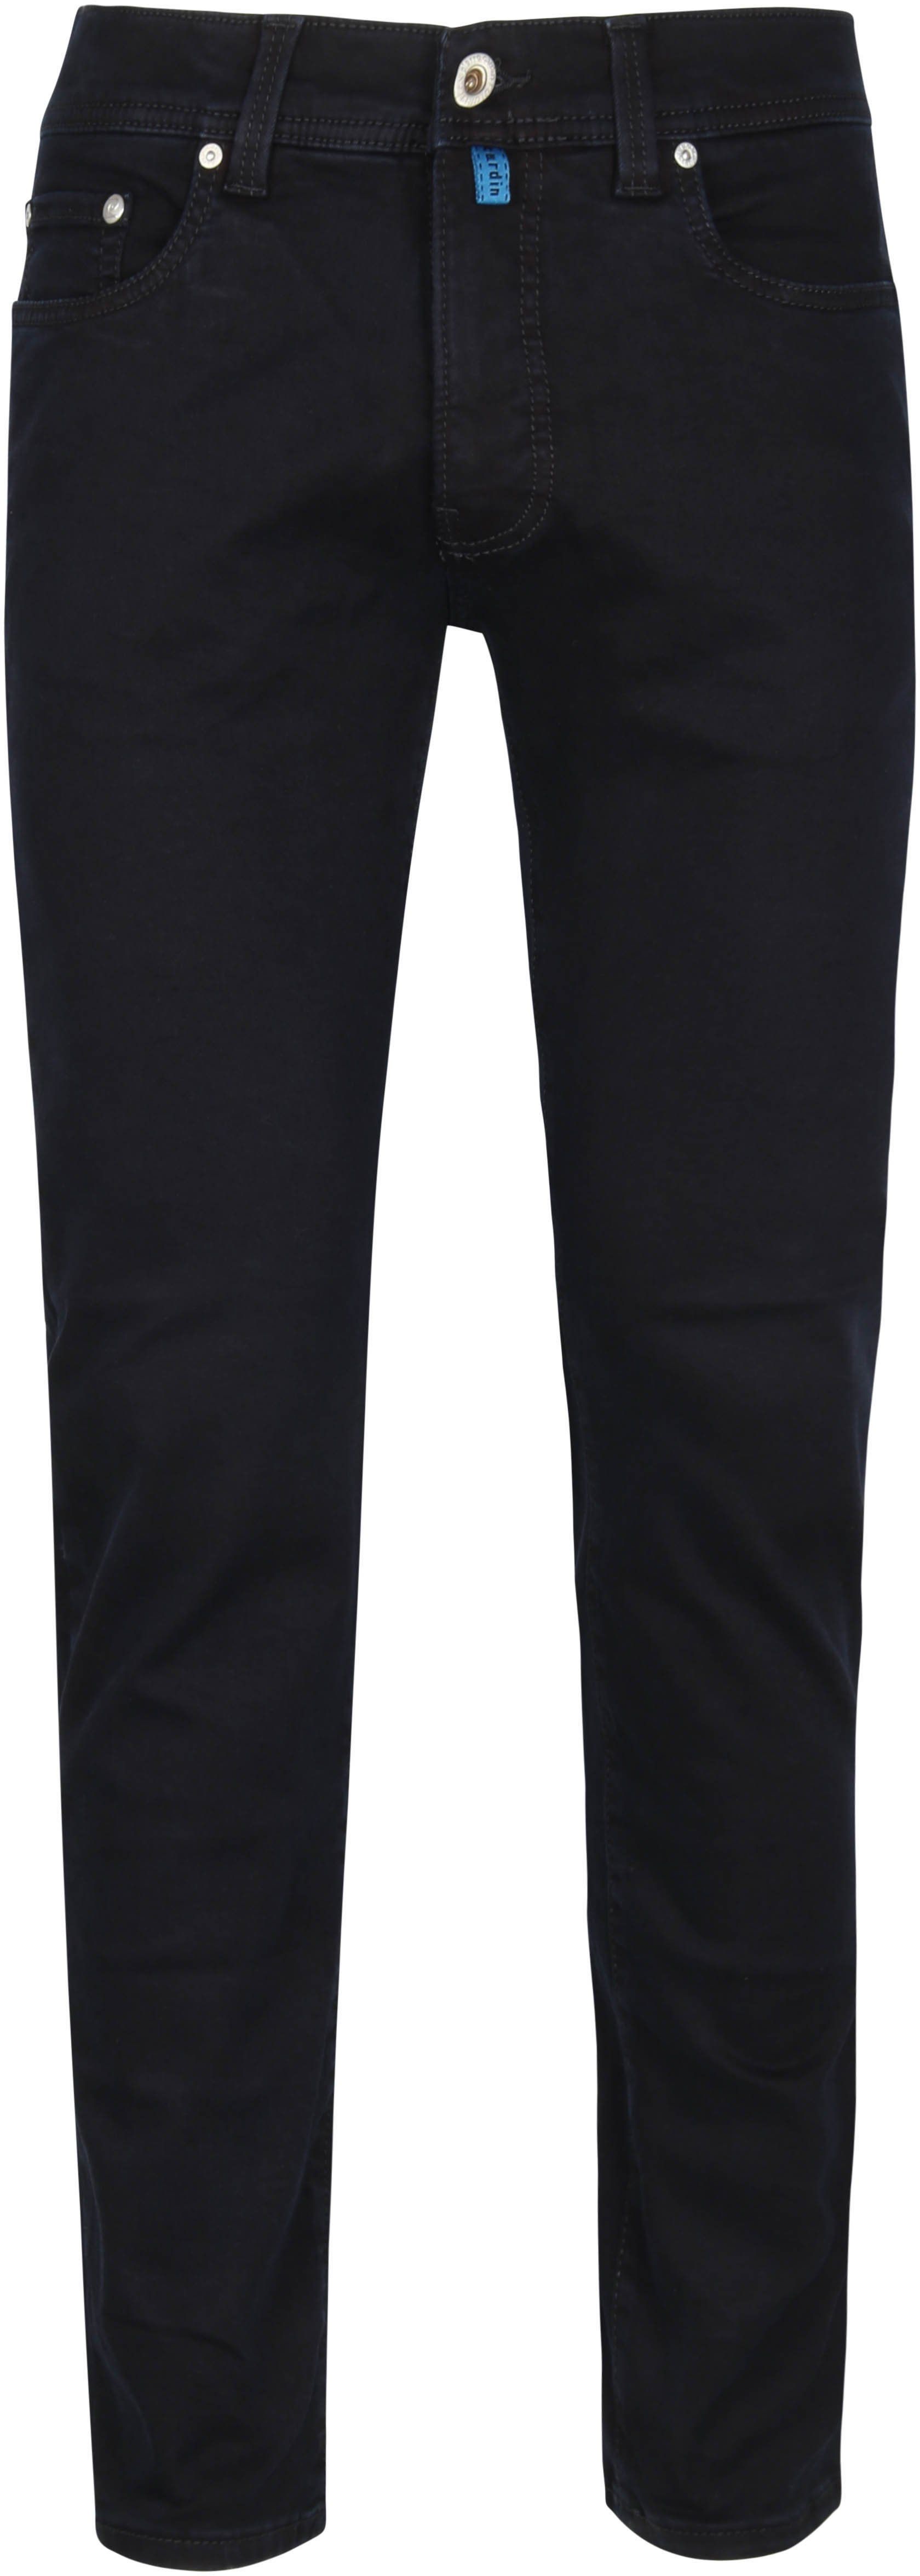 Pierre Cardin Jeans Dark Blue Dark Blue size W 33